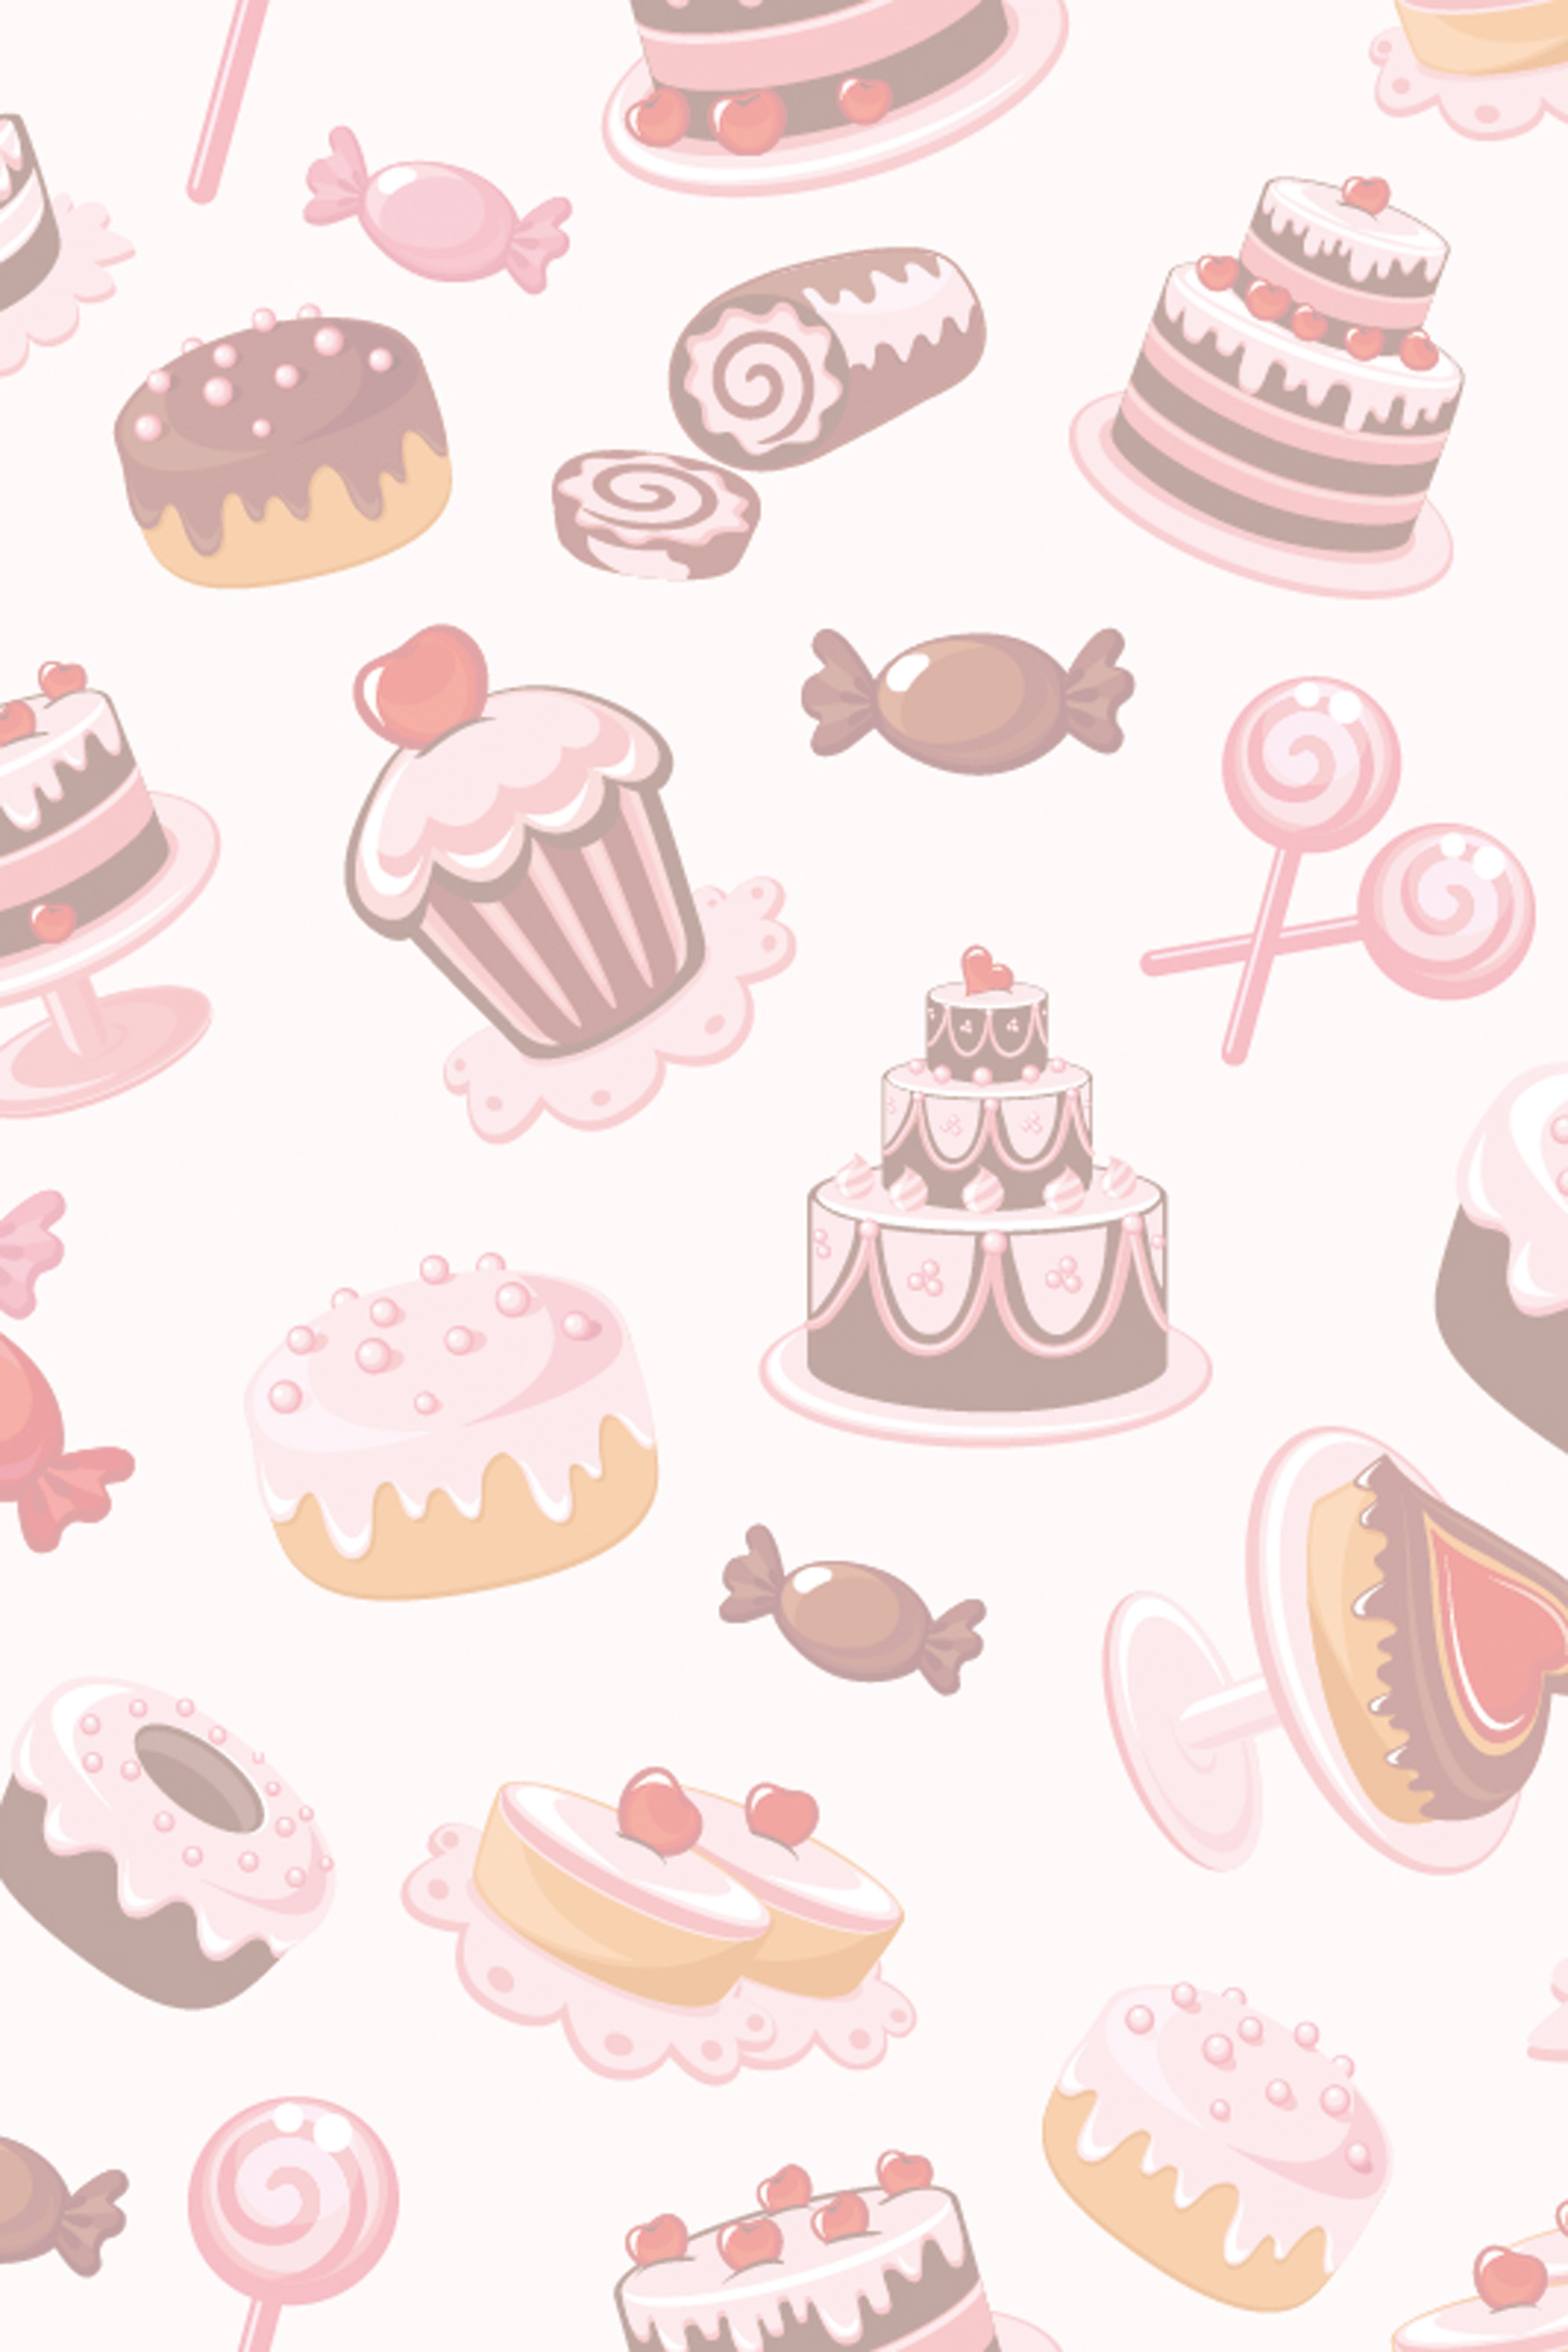 Cupcakes wallpaper, Cake wallpaper .in.com